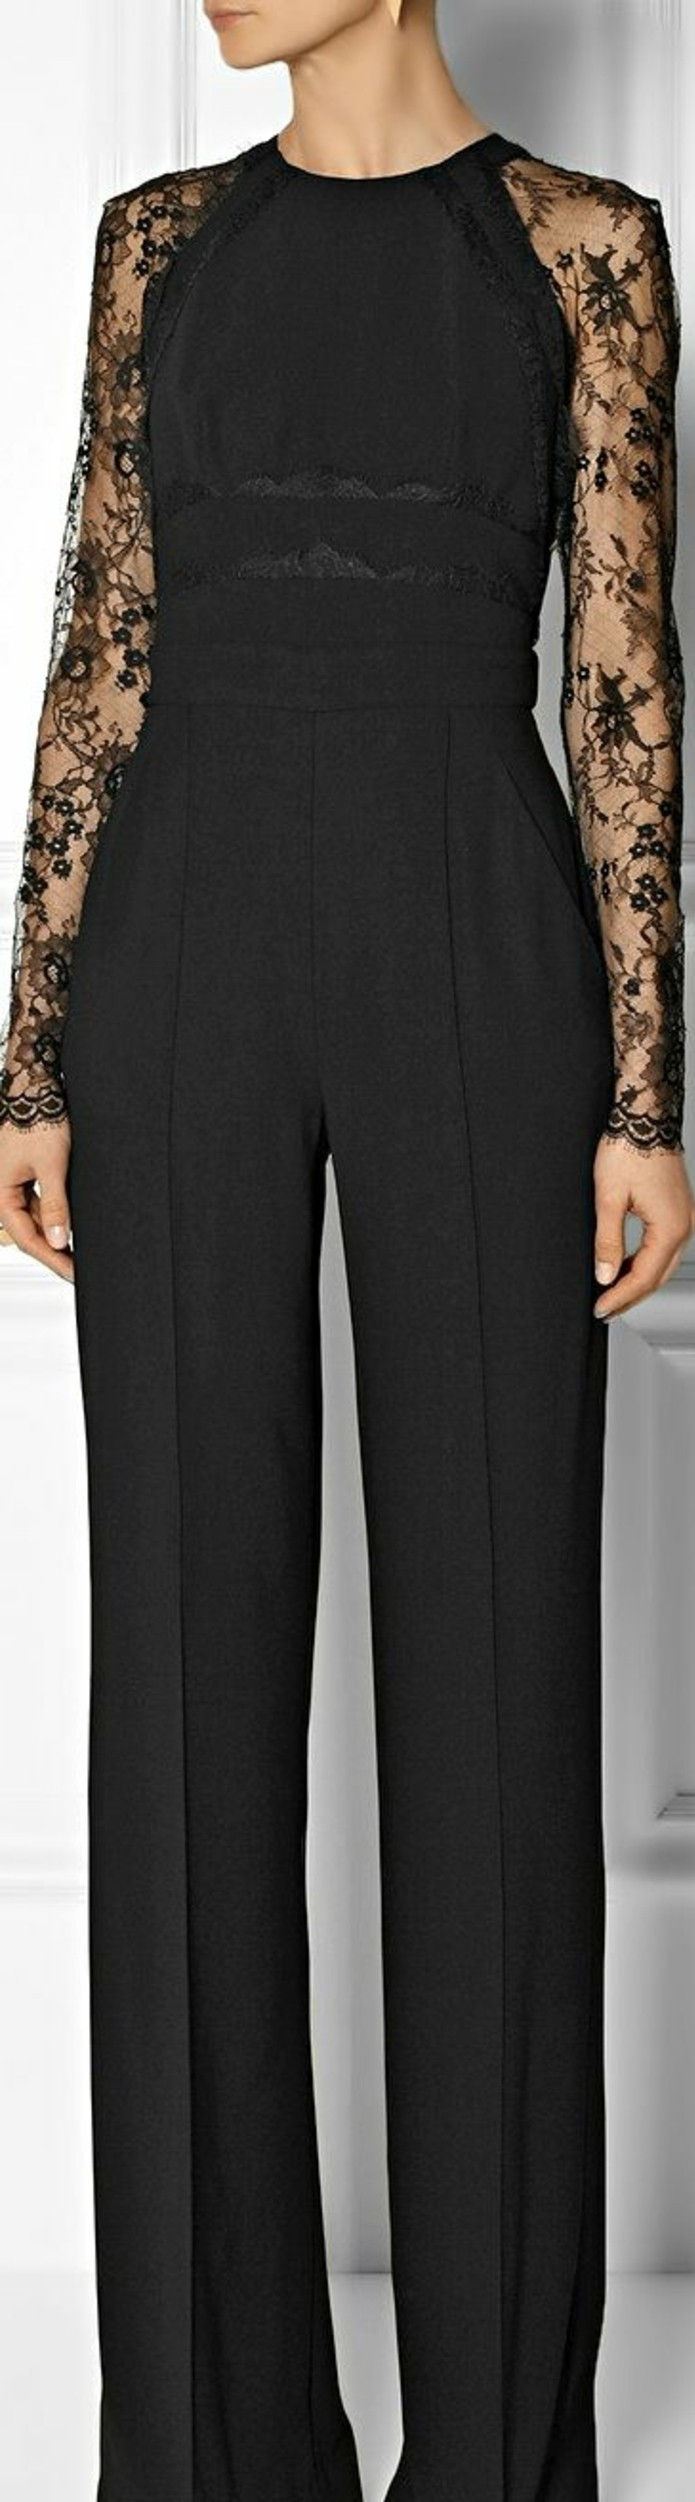 chic-dress-black-košeľové nohavice s čipkou-Dame-Fashion-ženy